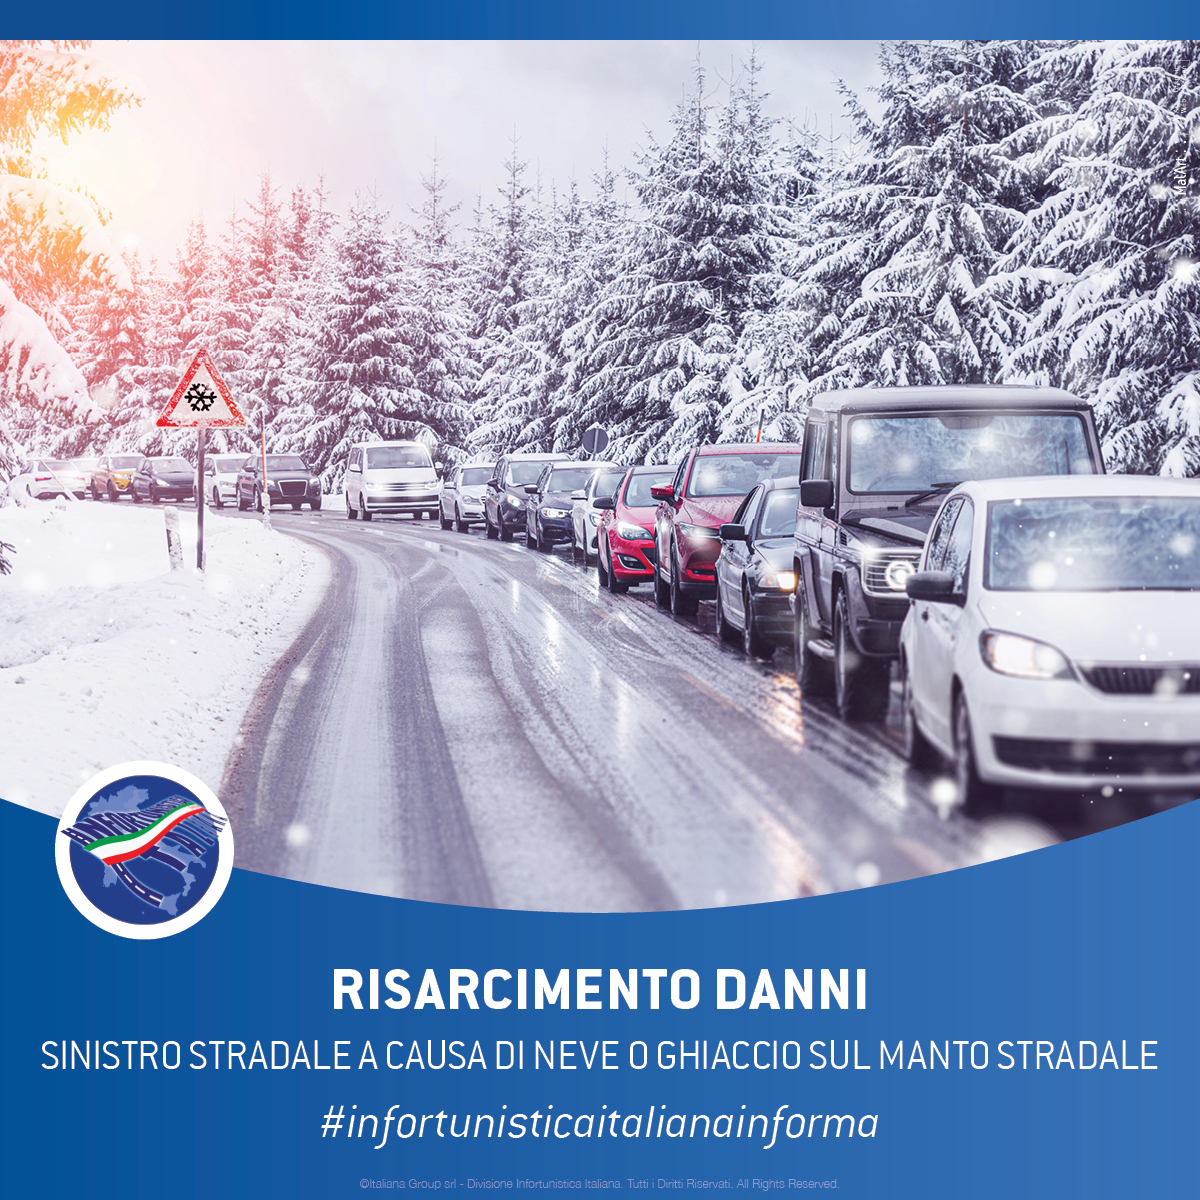 Hai avuto un sinistro stradale a causa di neve o ghiaccio sul manto stradale?